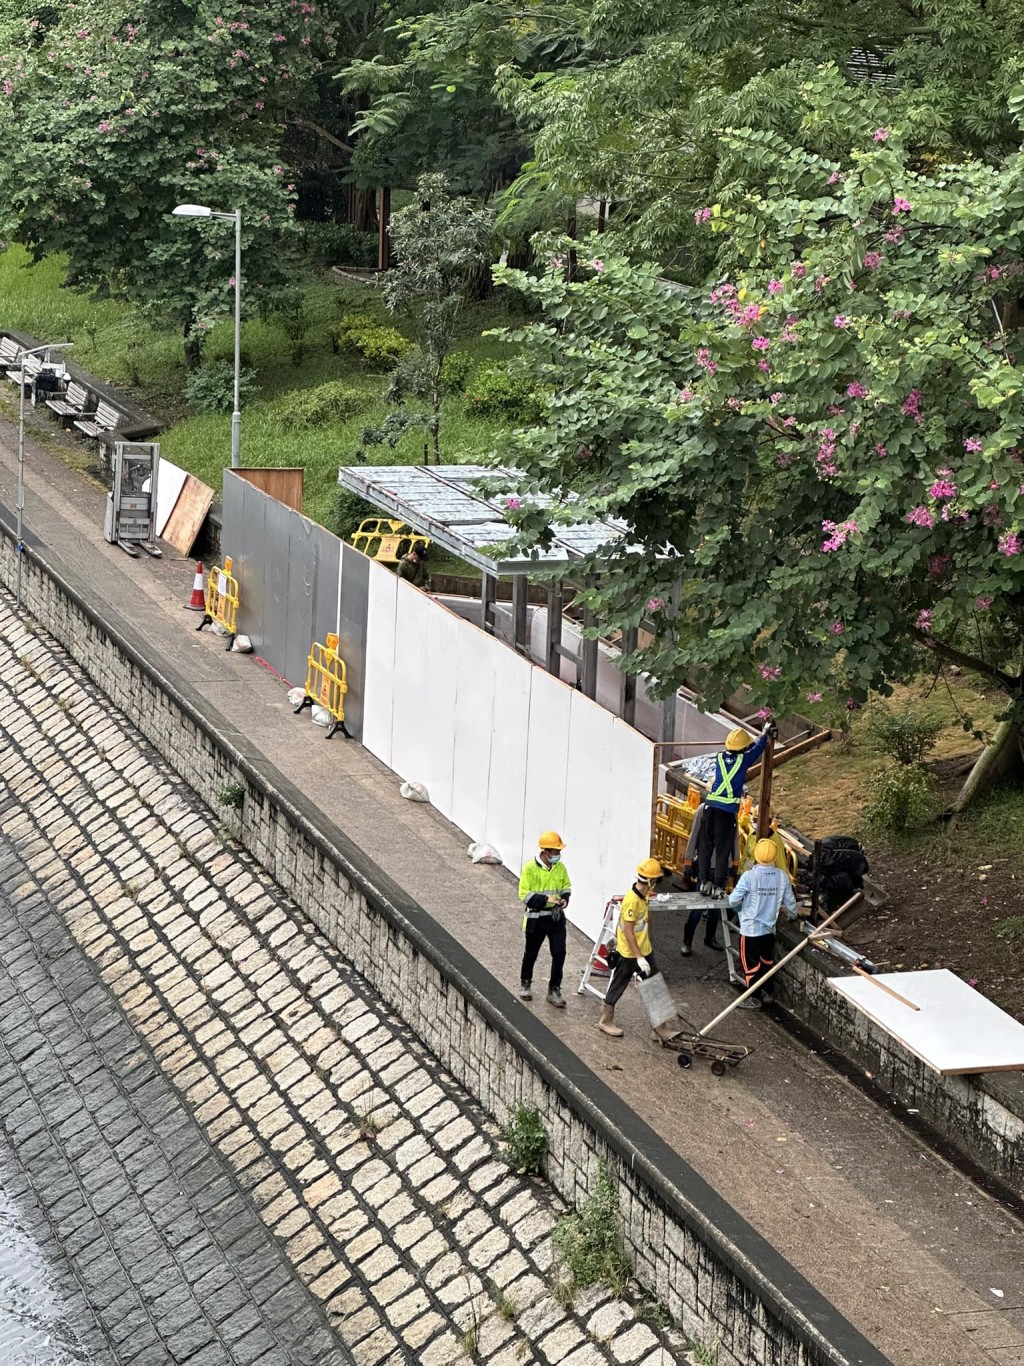 有大埔街坊發現運作僅約1個月的列車造型避雨亭已被圍封。「大埔 TAI PO」群組